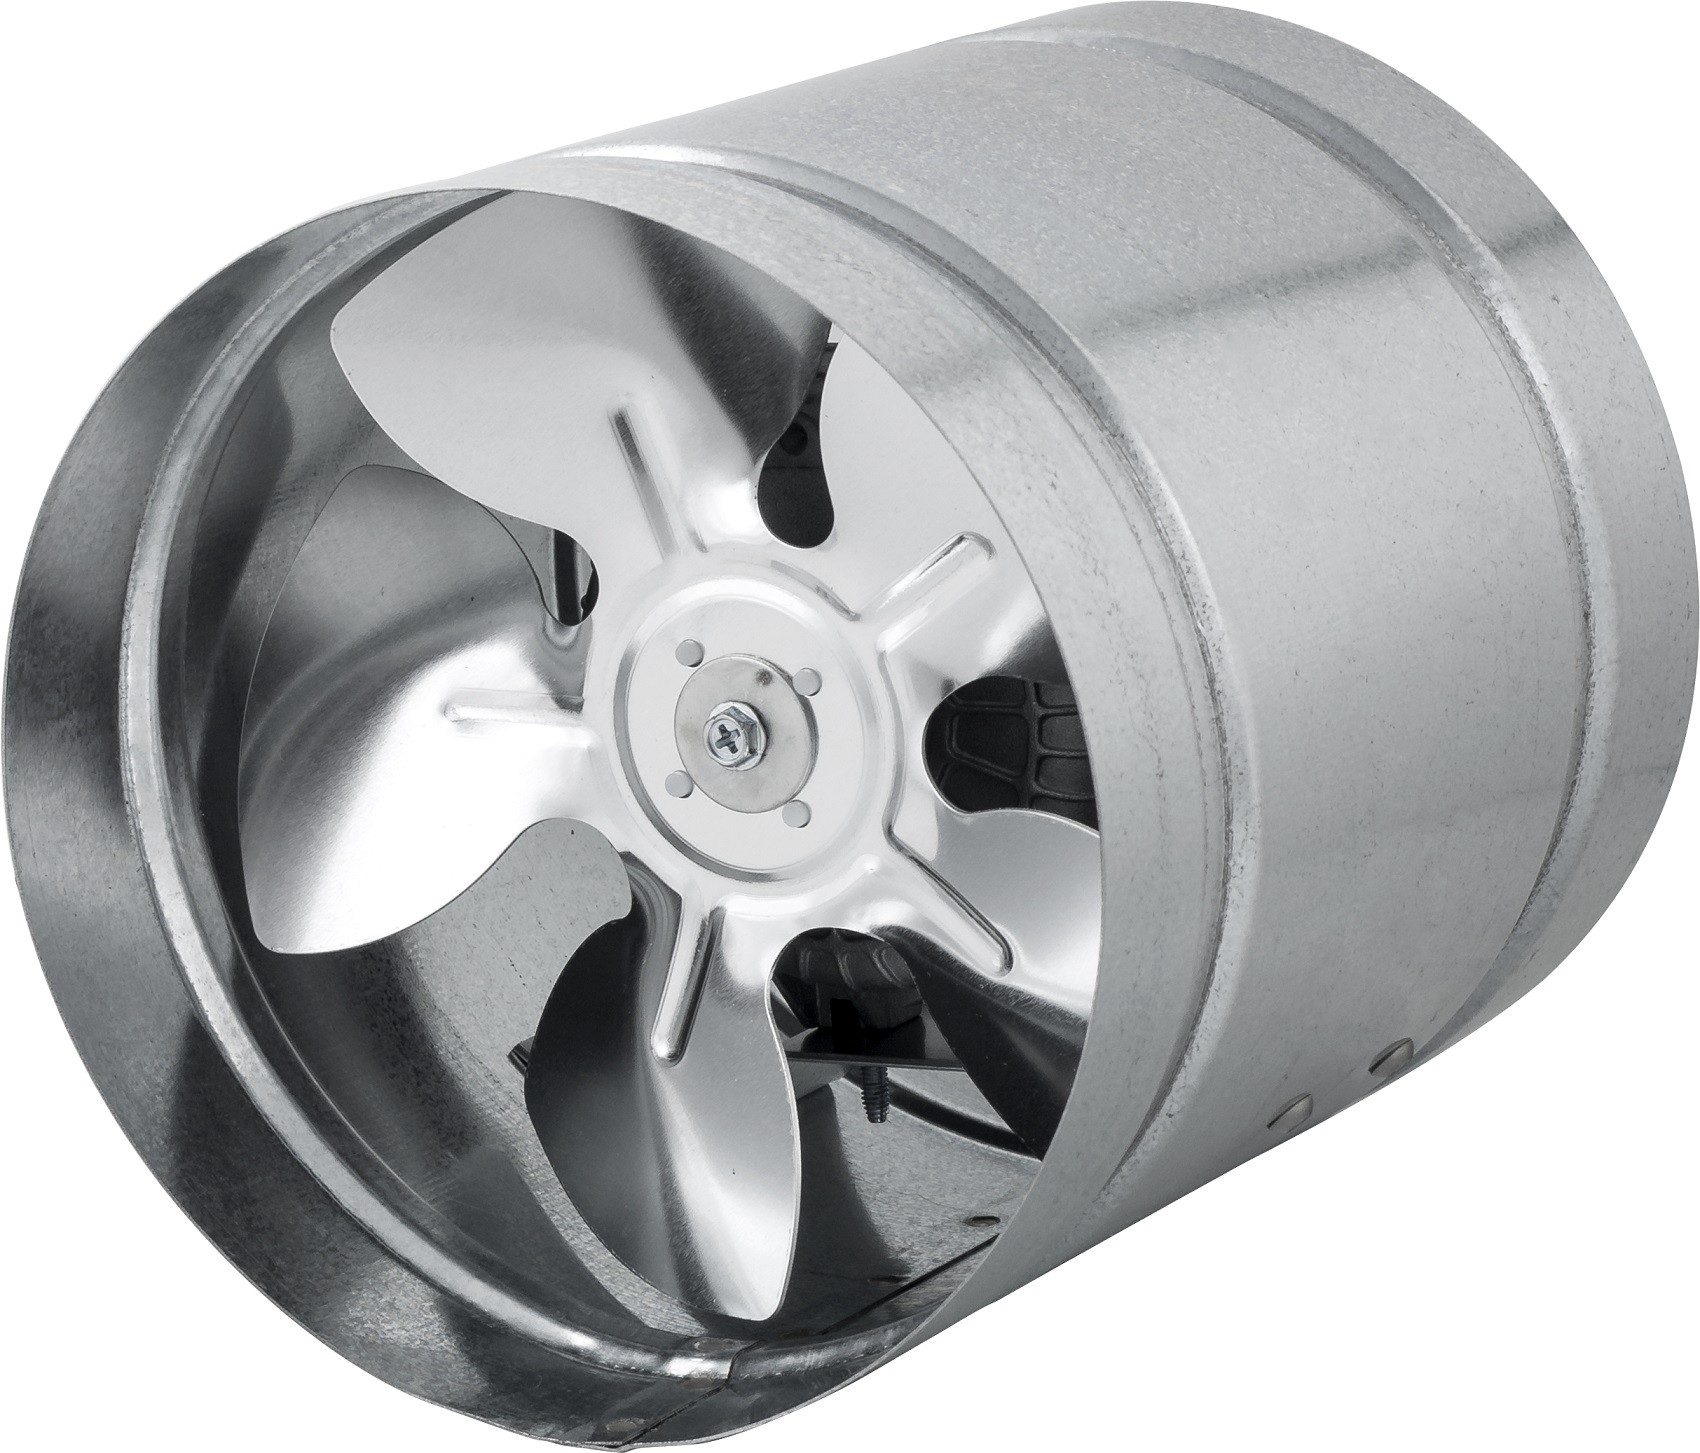 Канальный вентилятор бытовой круглый AirRoxy aRw 150 (01-106)